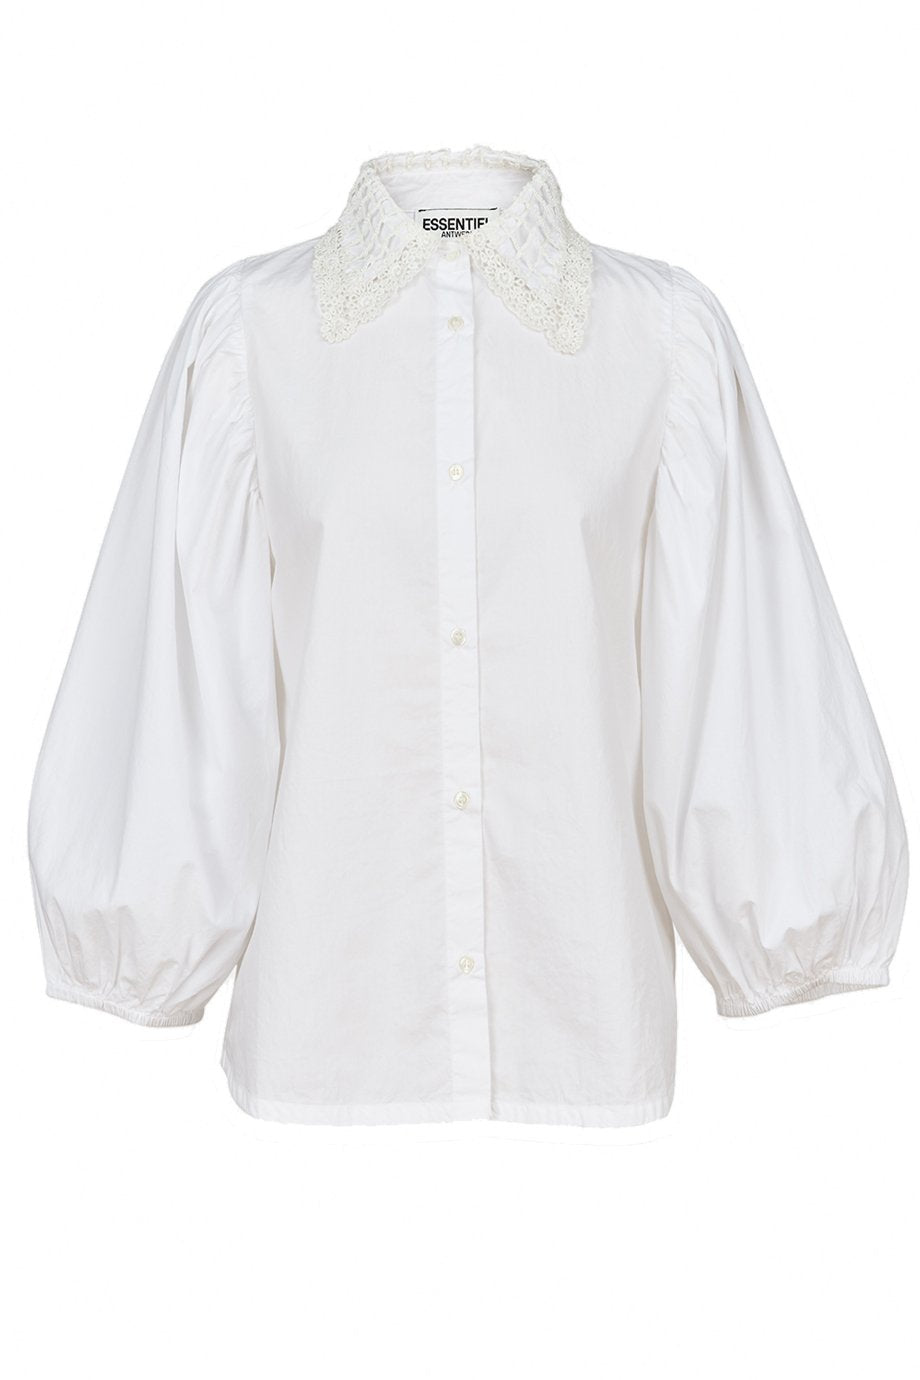 Essentiel Antwerp Zelder Shirt - White